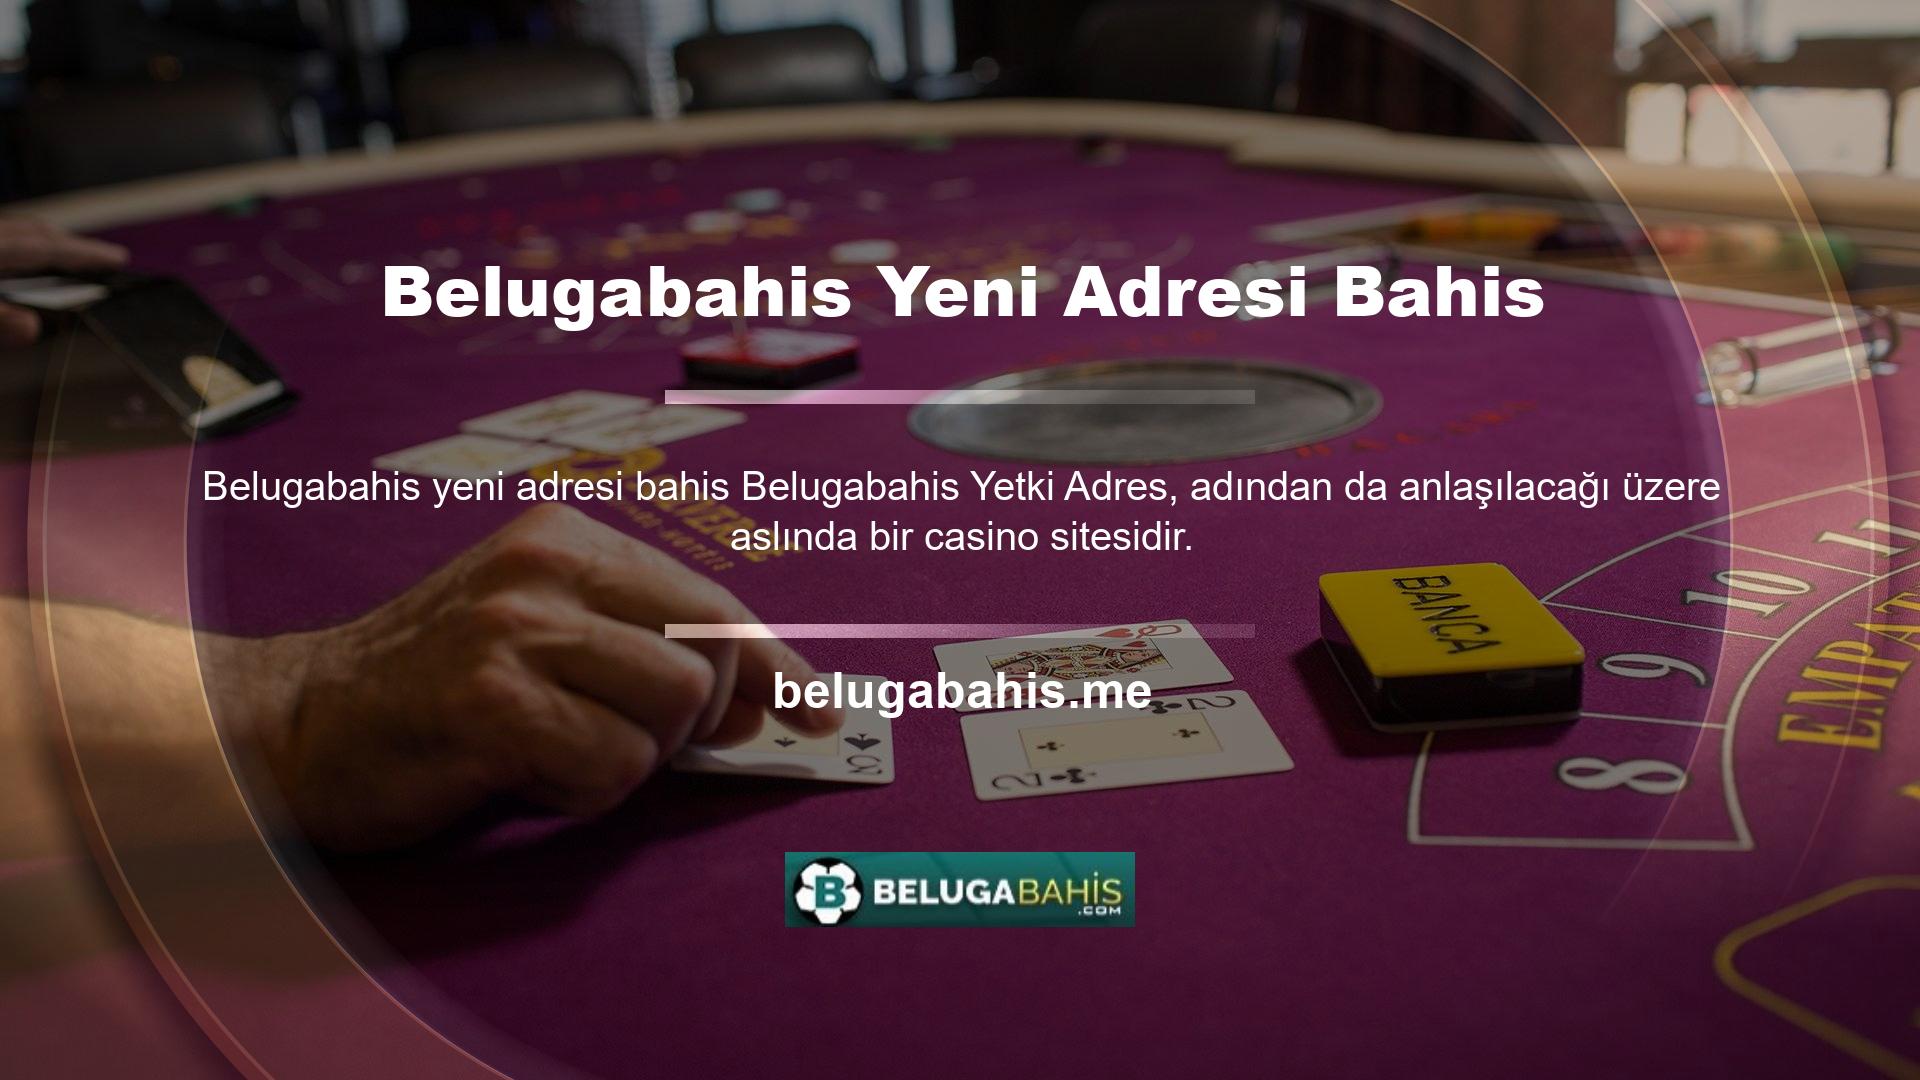 Belugabahis, ilk Türkçe dil bahis sitesi ve bu alandaki kurucu ve geliştiricidir